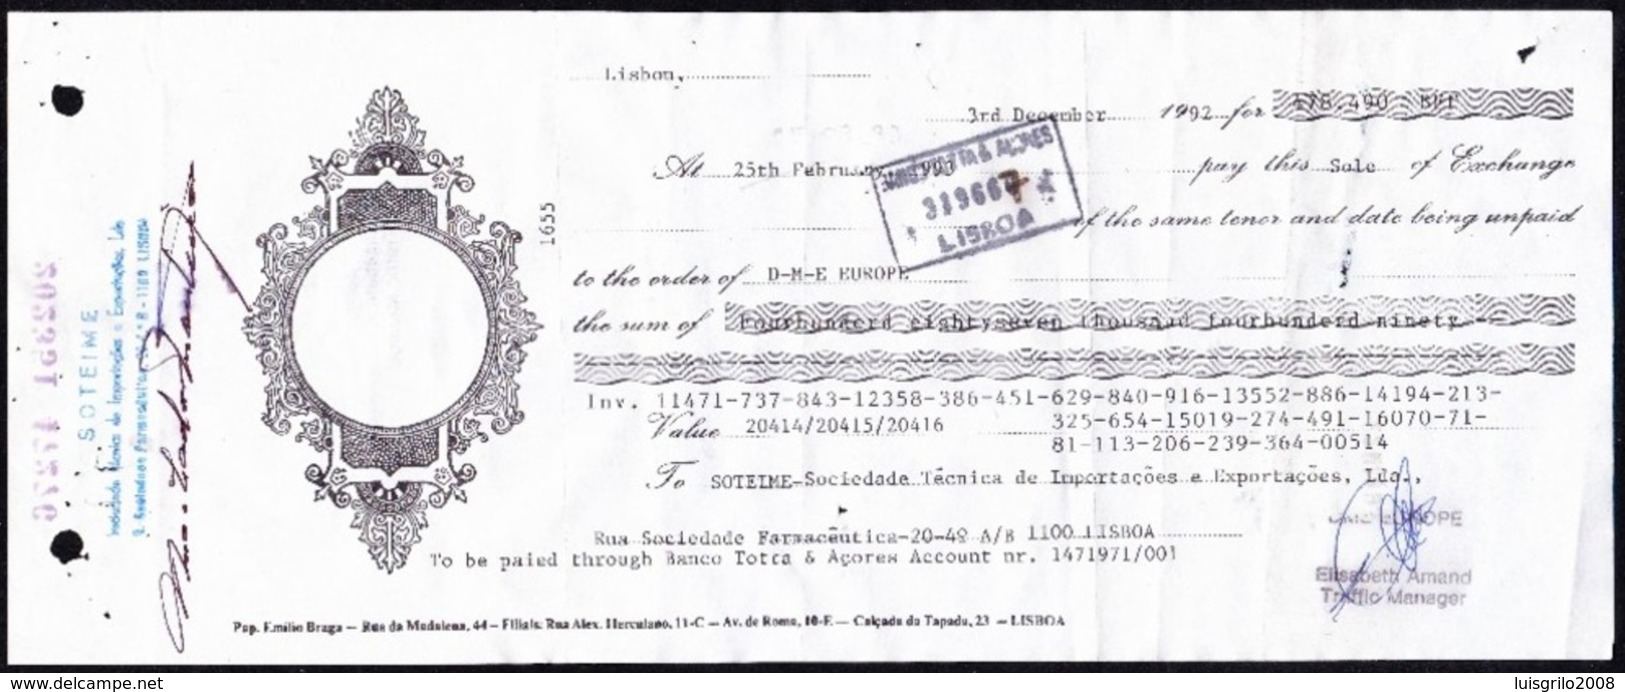 REVENUE / FISCAL, Portugal - Commercial Bank Letter / Papelatria Emílio Braga, Lisboa - Cartas & Documentos